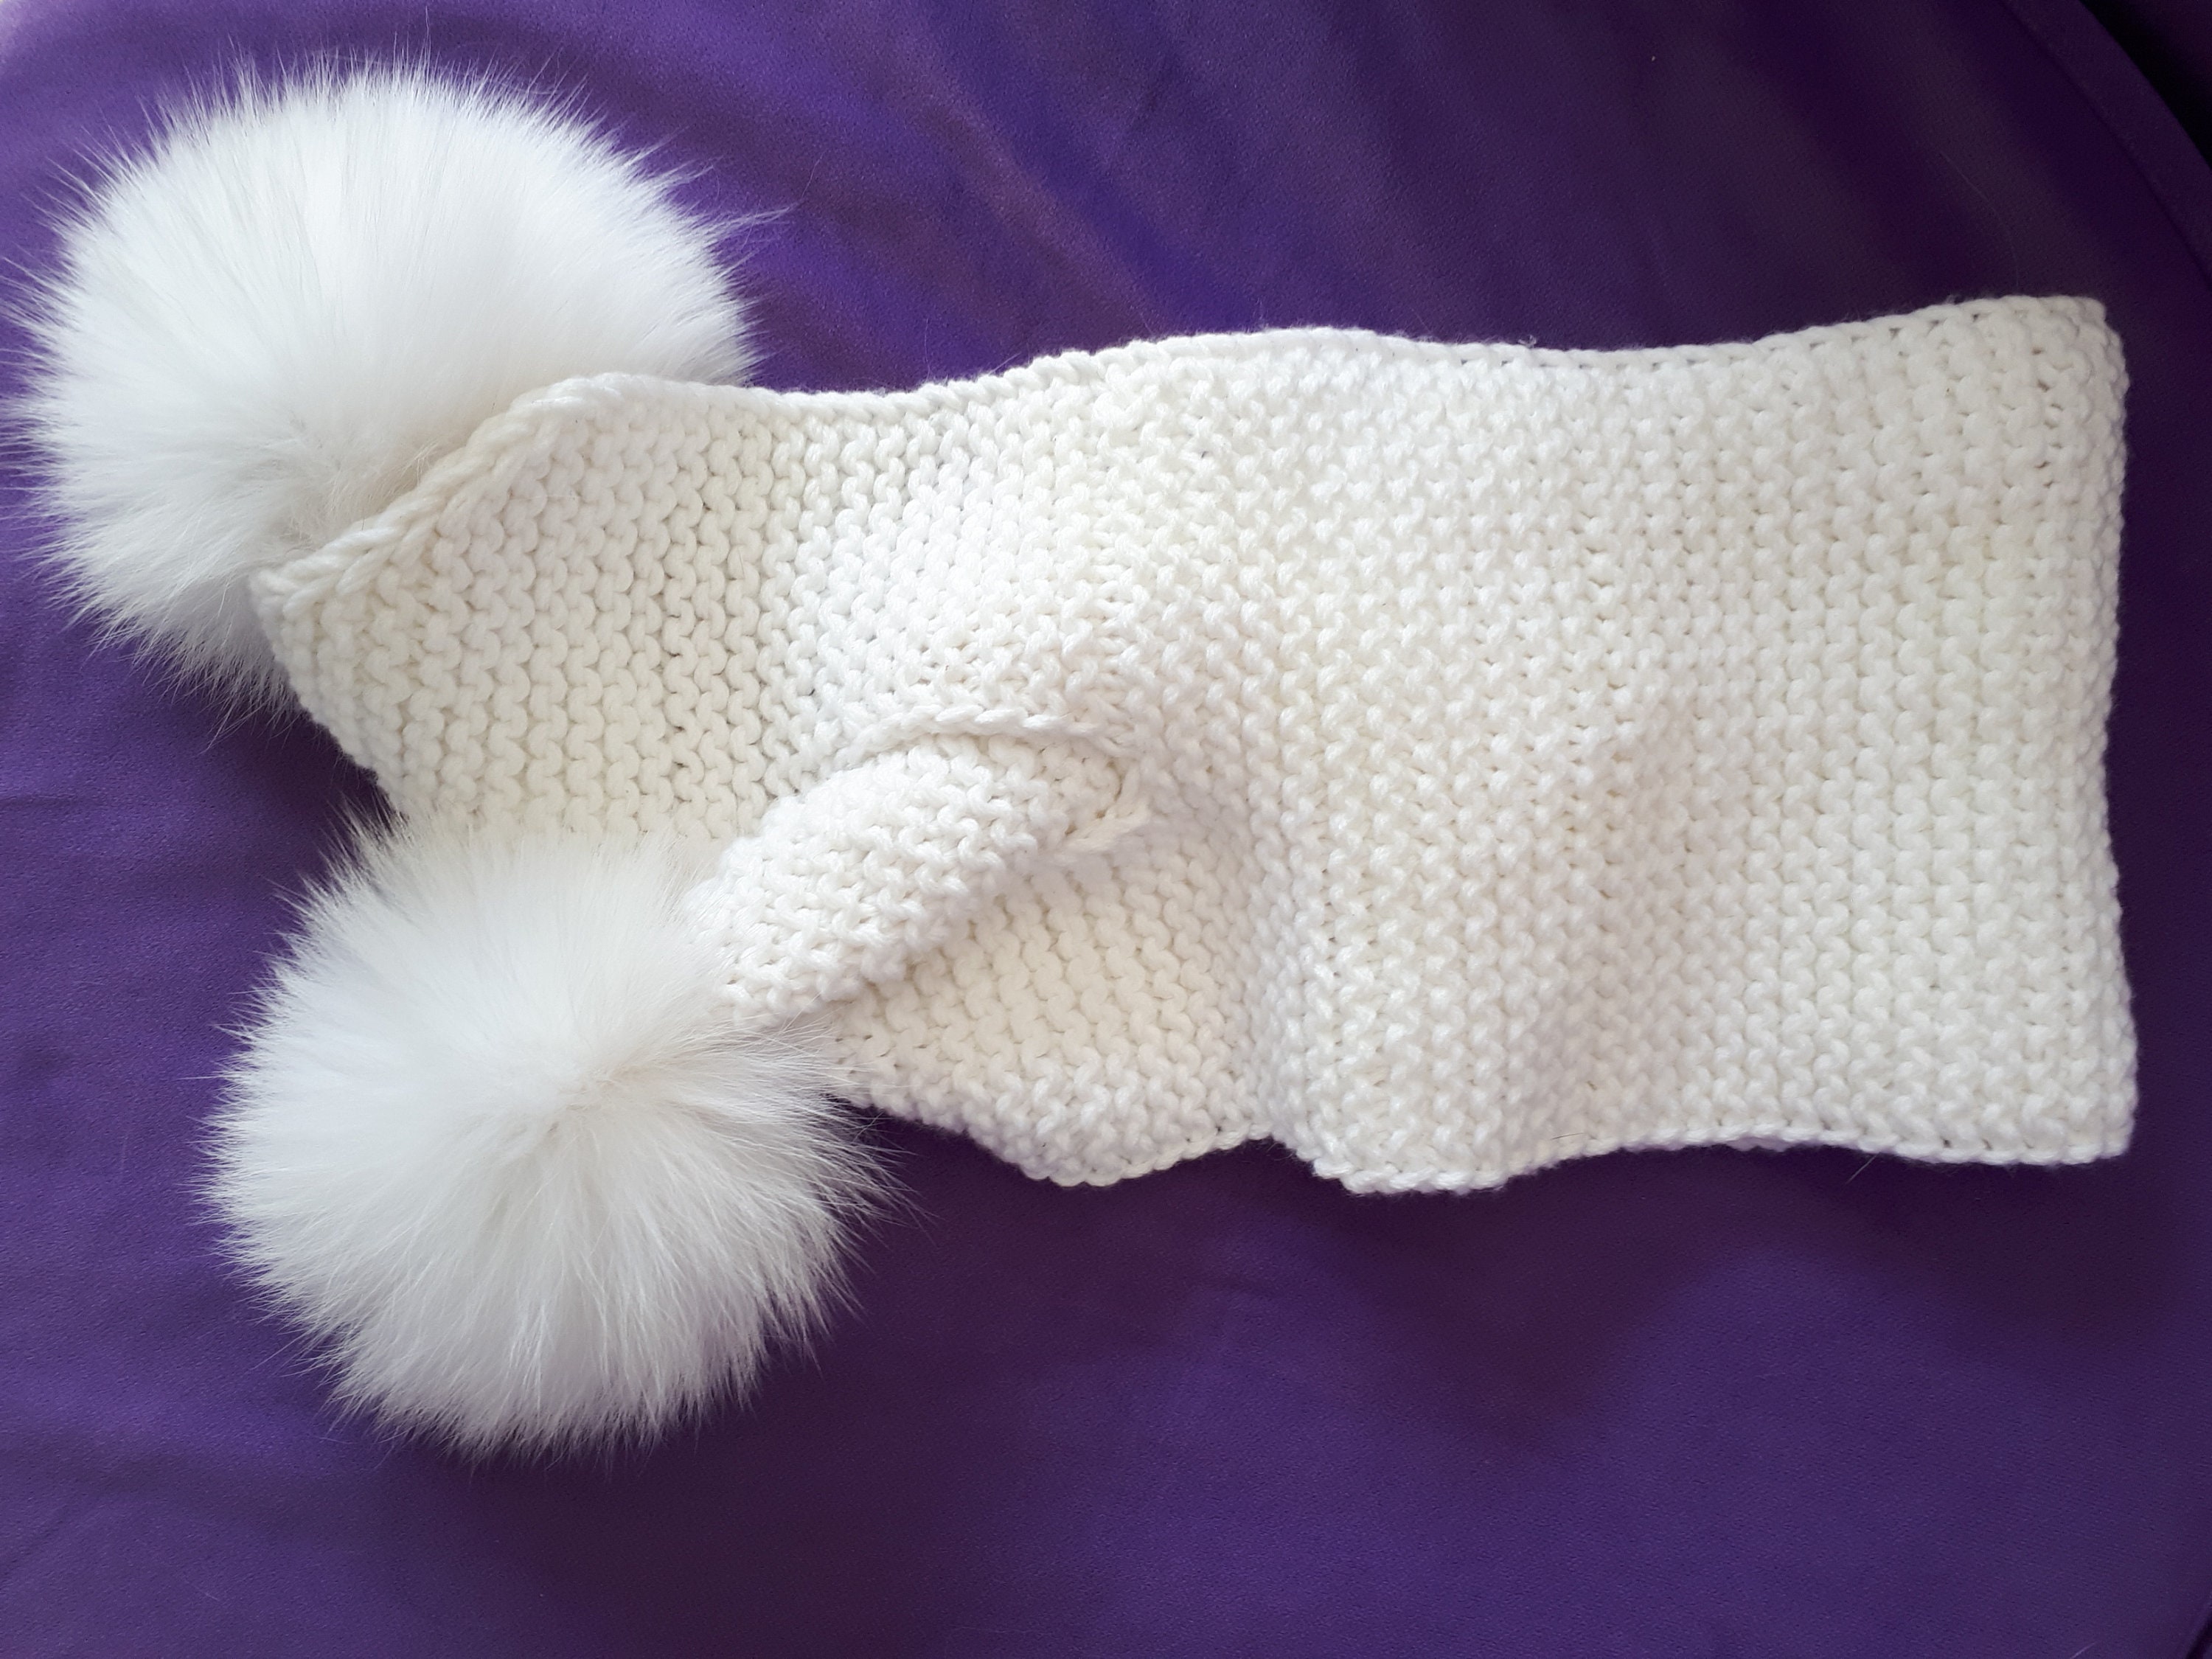 Kayla White Knit Scarf with Fur Pom Poms